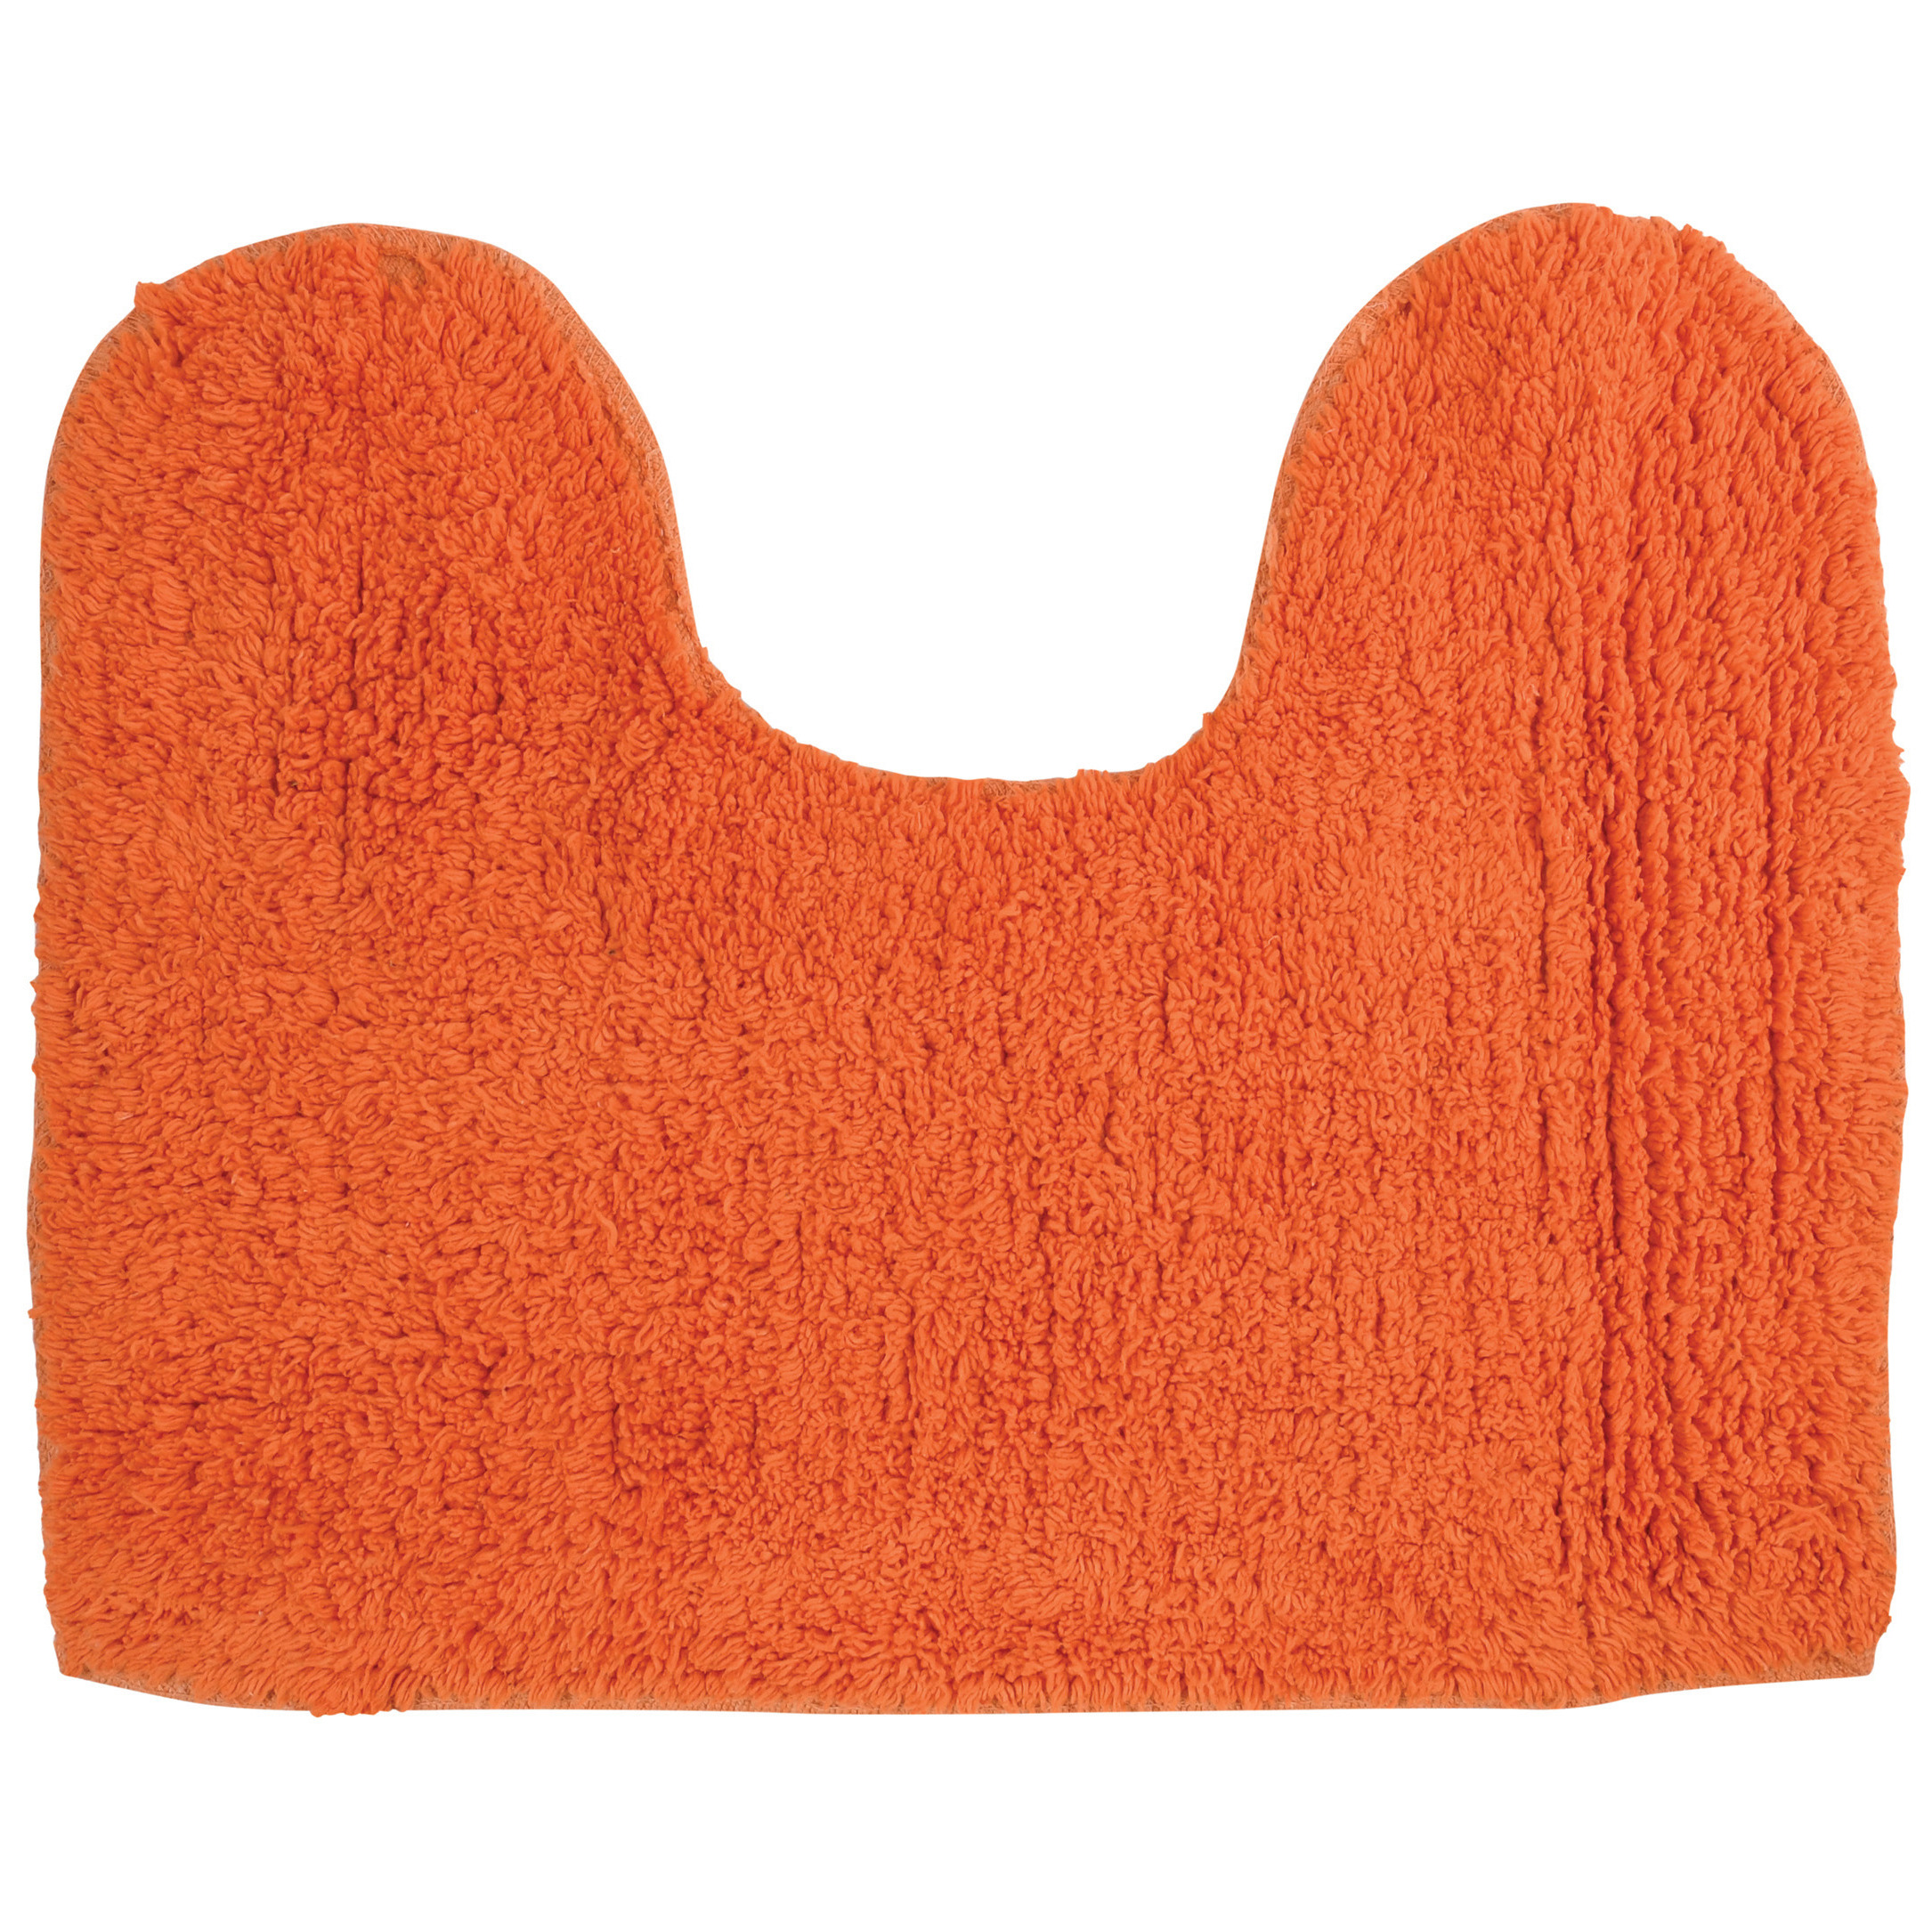 Badkamerkleedje-badmat voor op de vloer oranje 45 x 35 cm